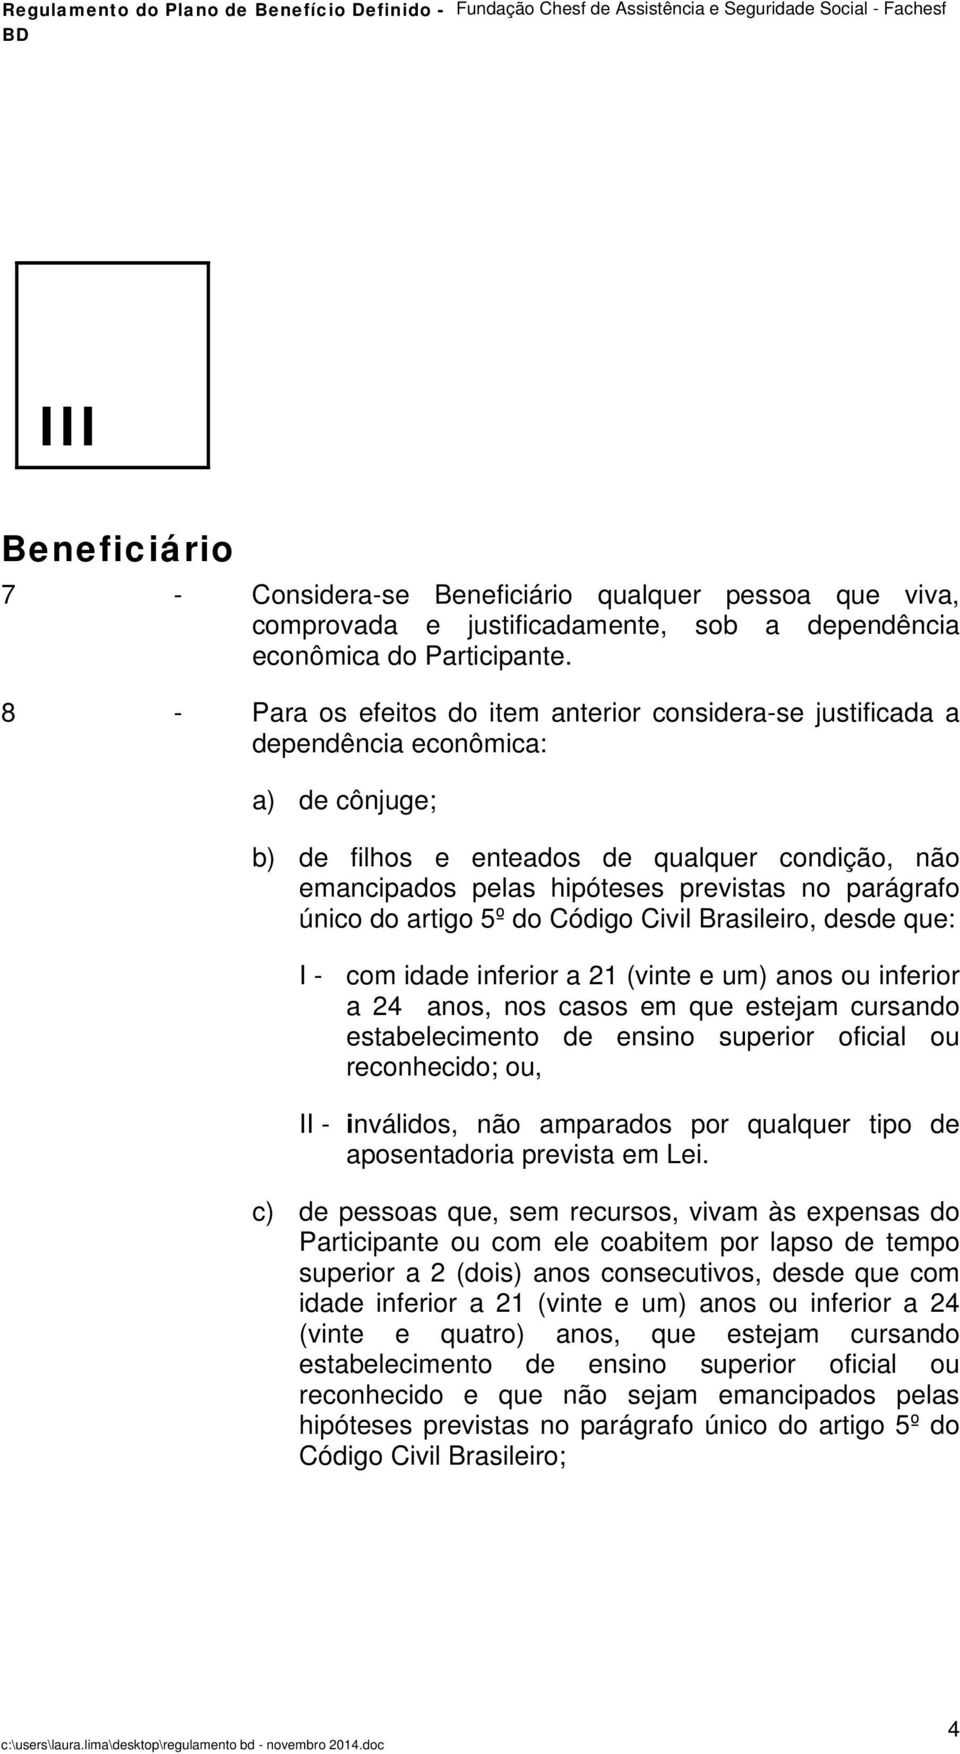 parágrafo único do artigo 5º do Código Civil Brasileiro, desde que: I - com idade inferior a 21 (vinte e um) anos ou inferior a 24 anos, nos casos em que estejam cursando estabelecimento de ensino